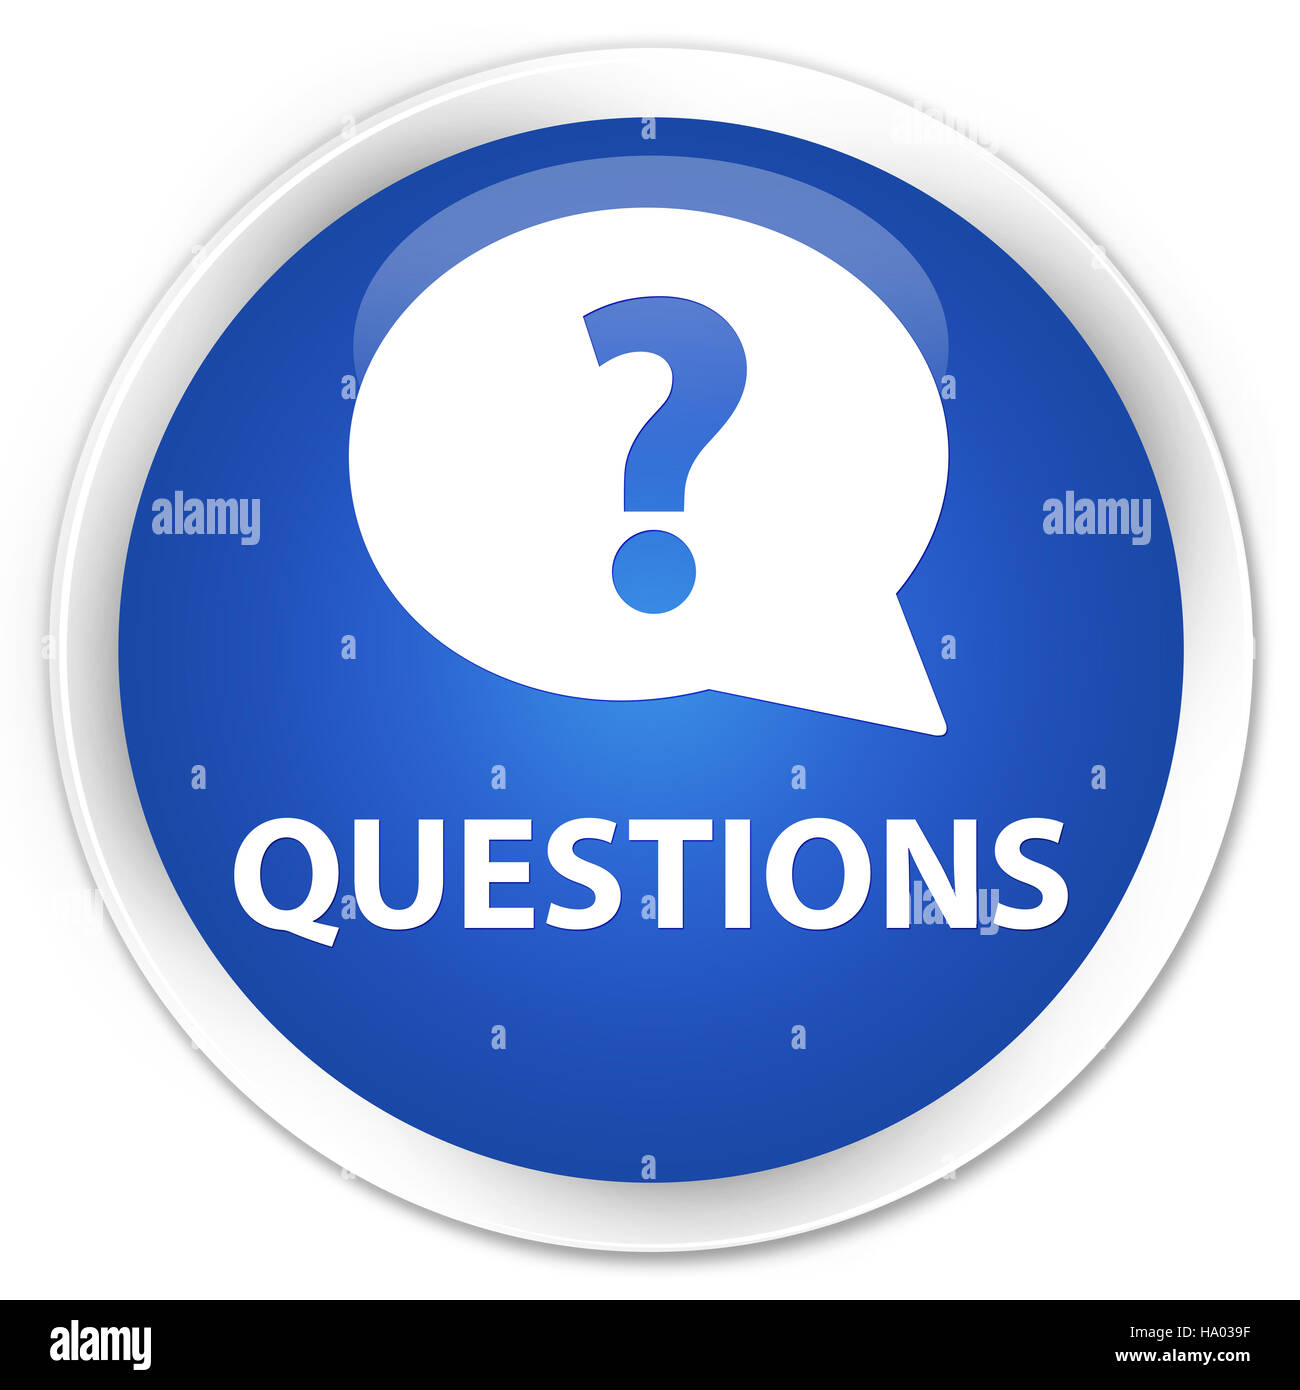 Questions (icône bulle) isolé sur le bouton rond bleu premium abstract illustration Banque D'Images